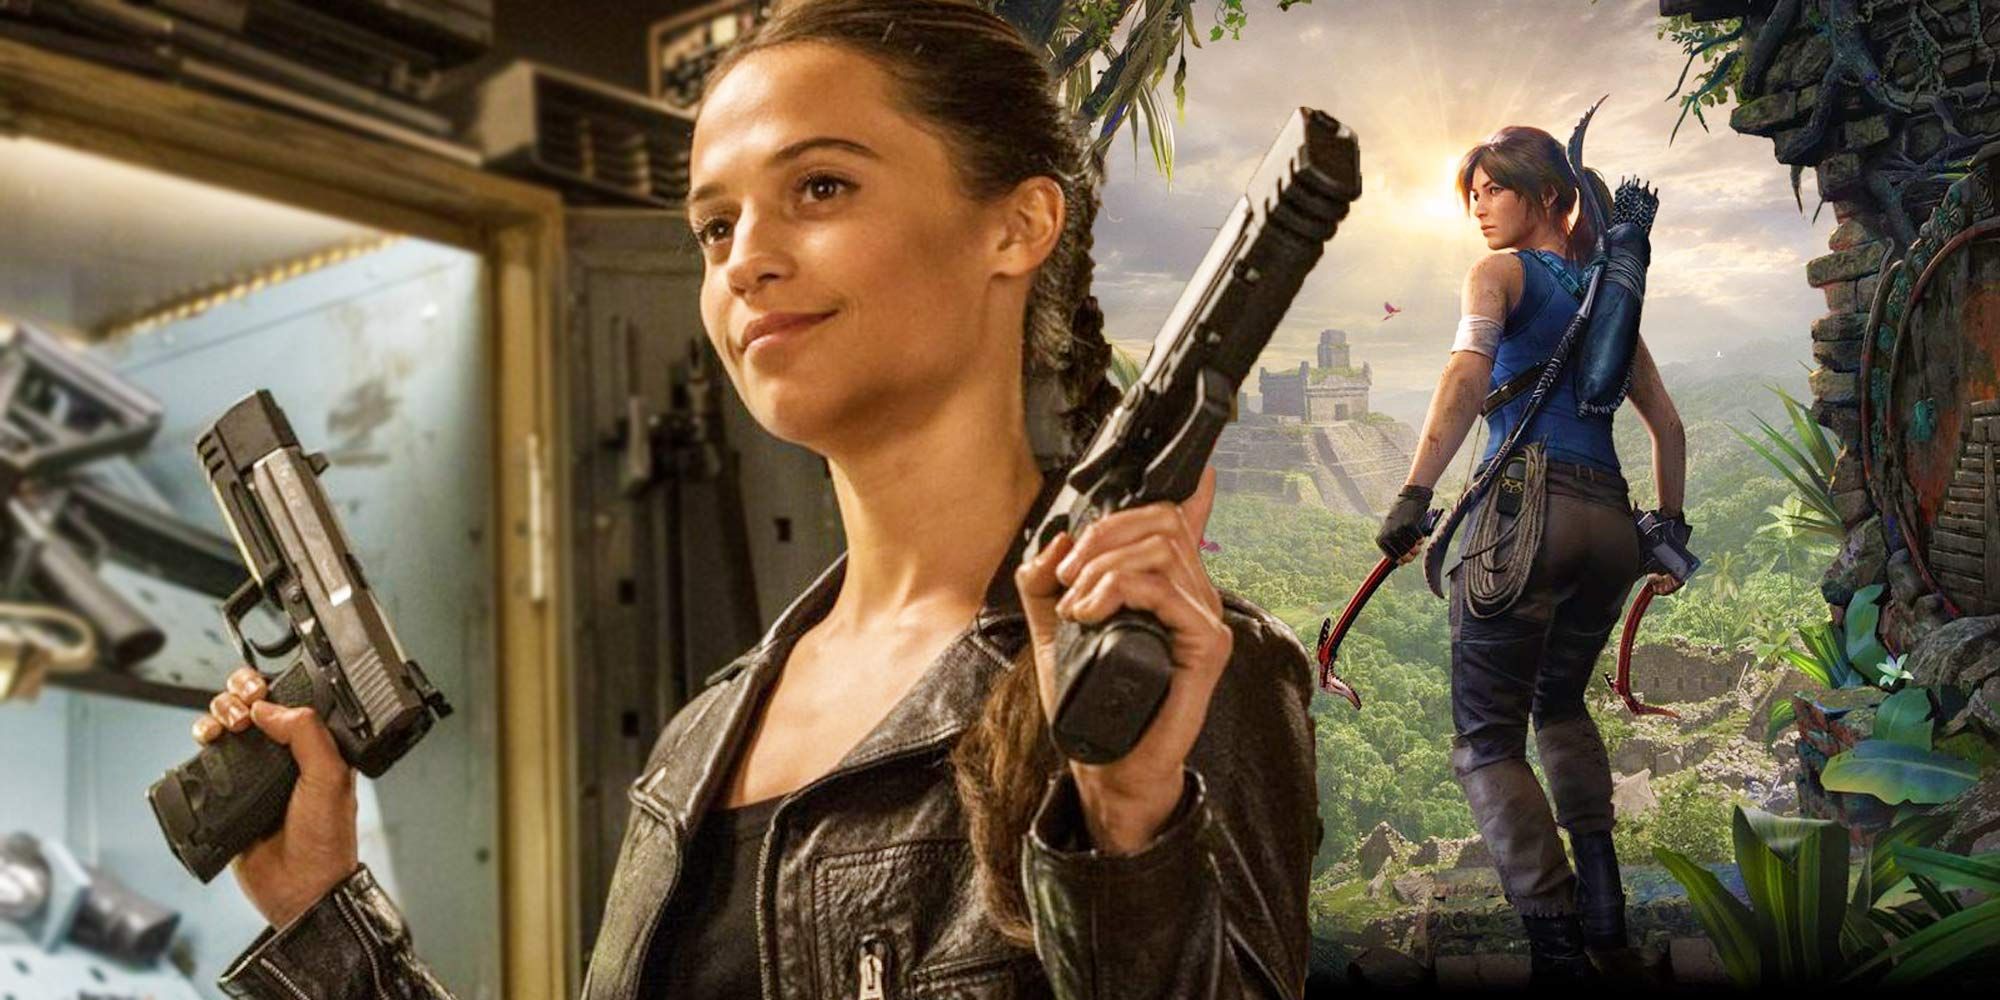 Alicia Vikander out as Lara Croft after MGM loses Tomb Raider movie rights